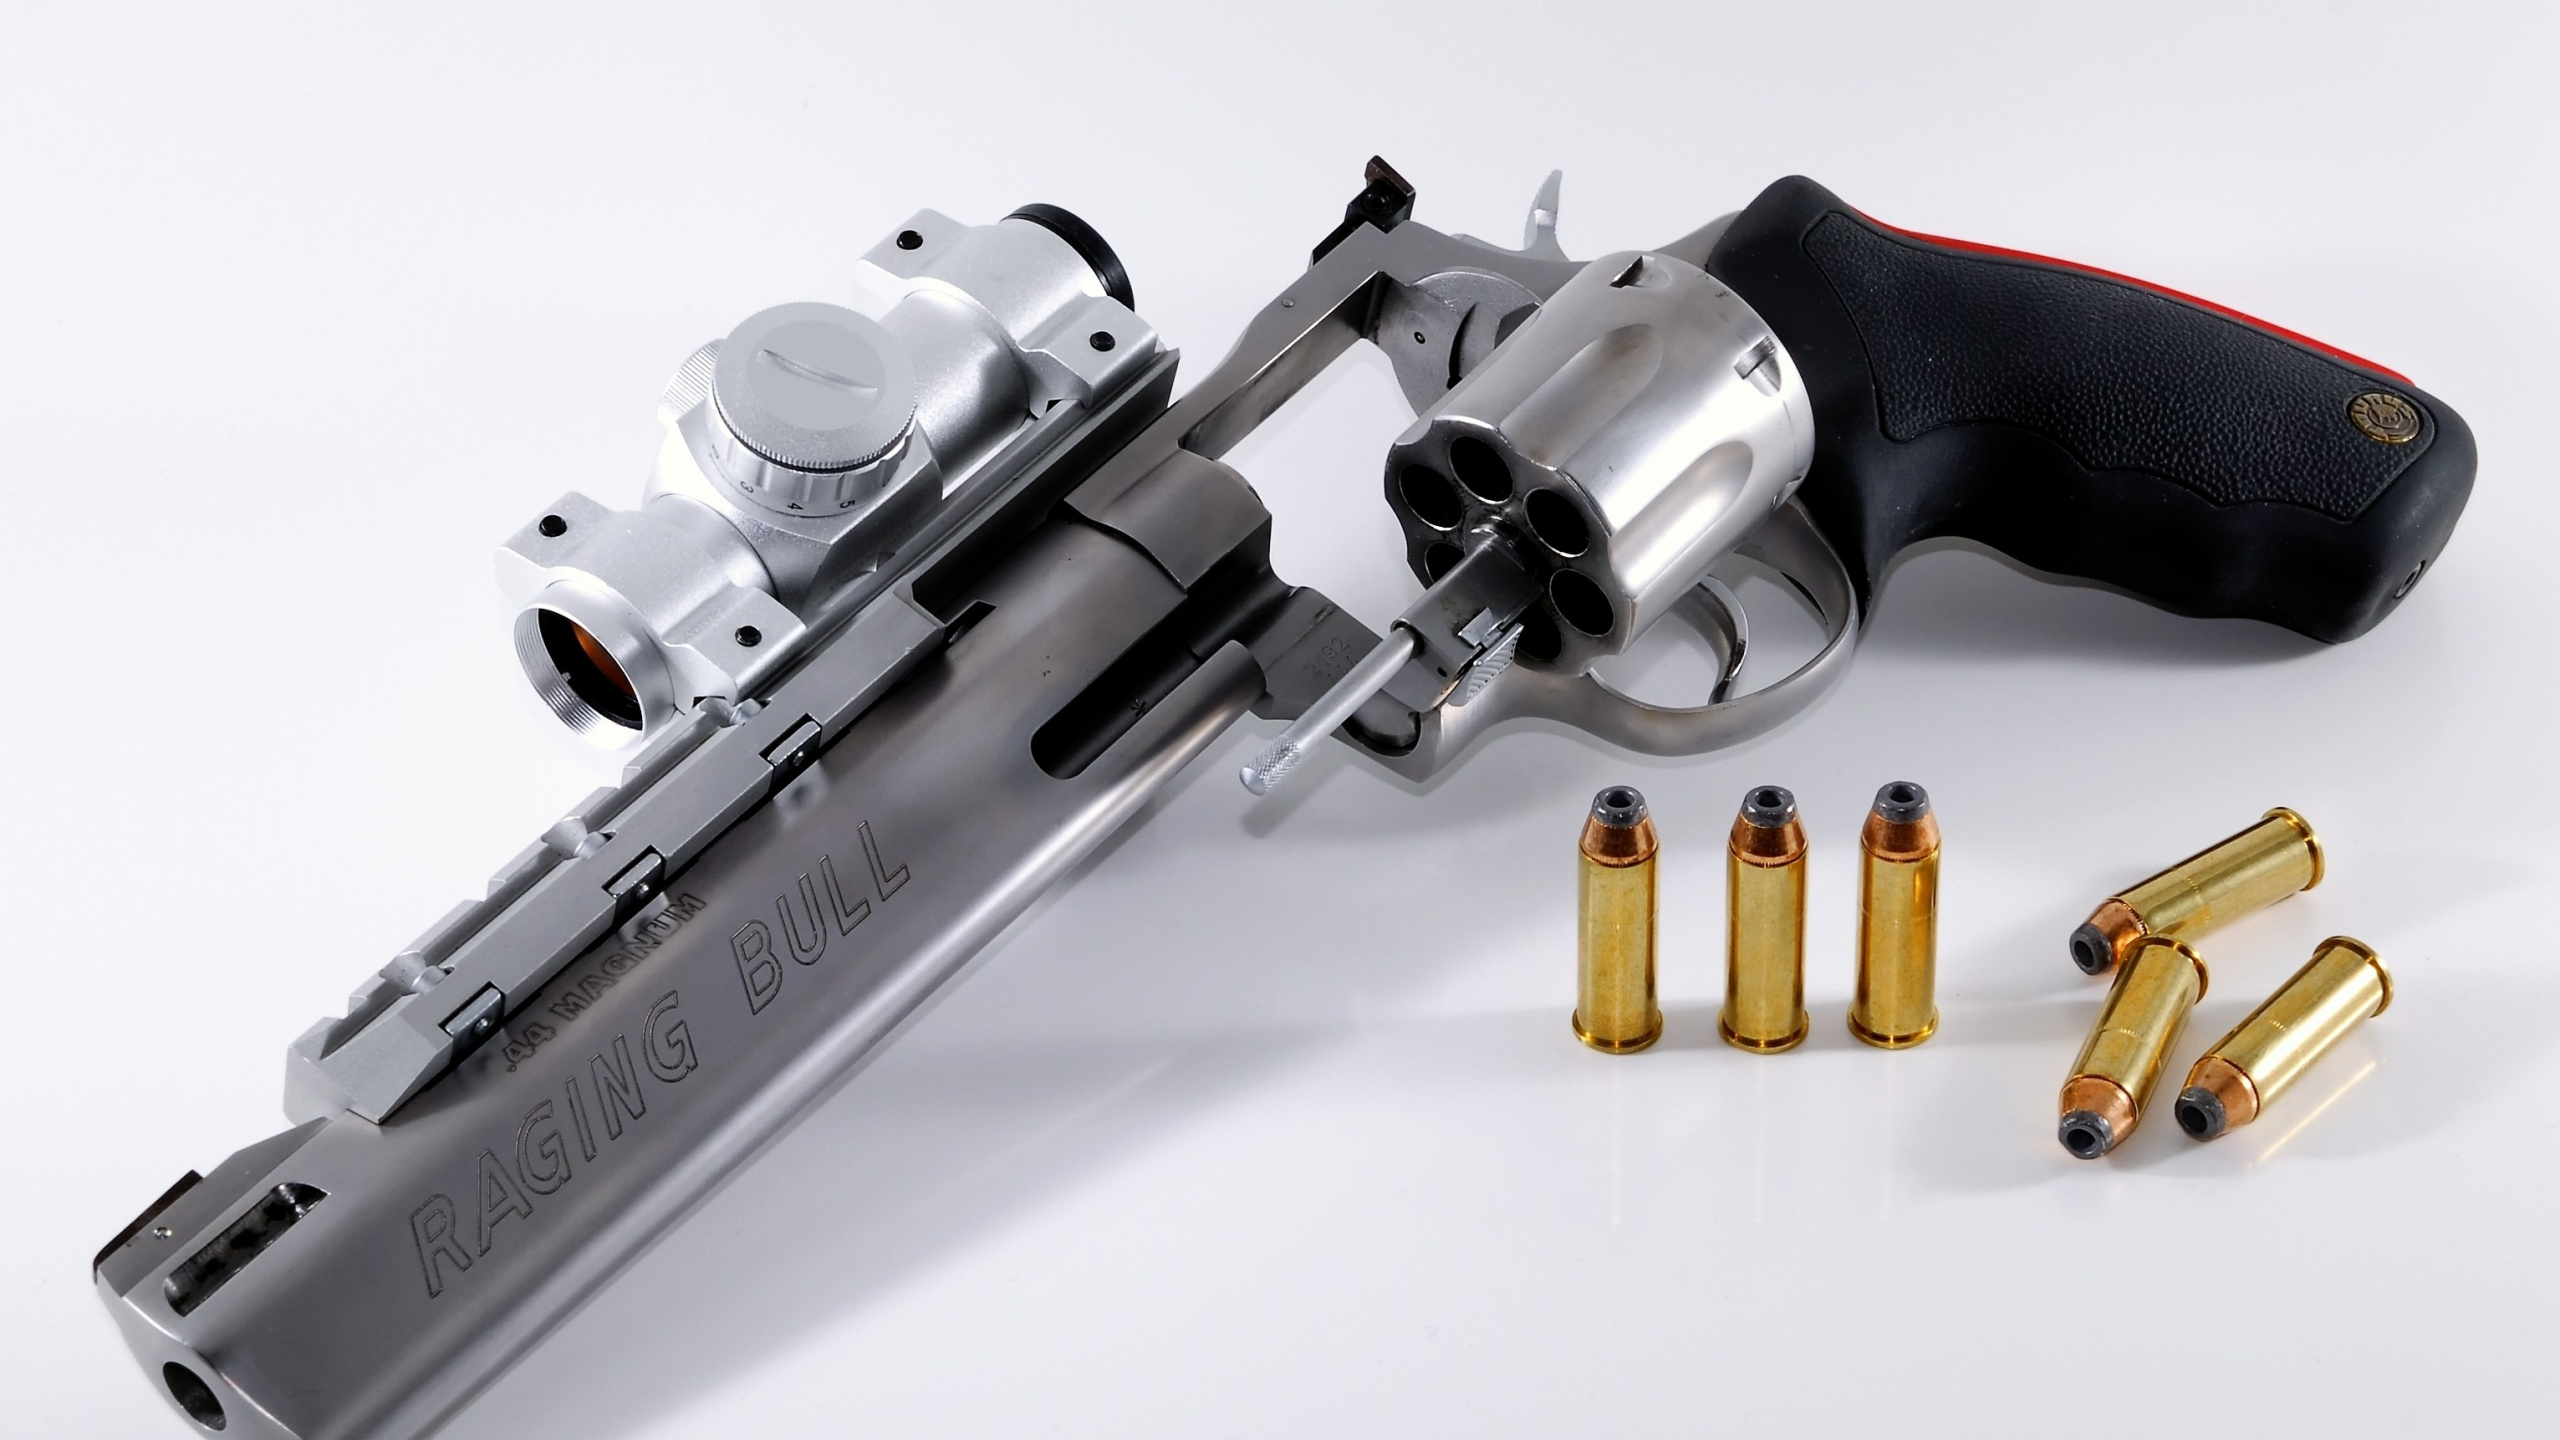 Revolver, Munition, Trigger, Handfeuerwaffe, Waffe. Wallpaper in 2560x1440 Resolution